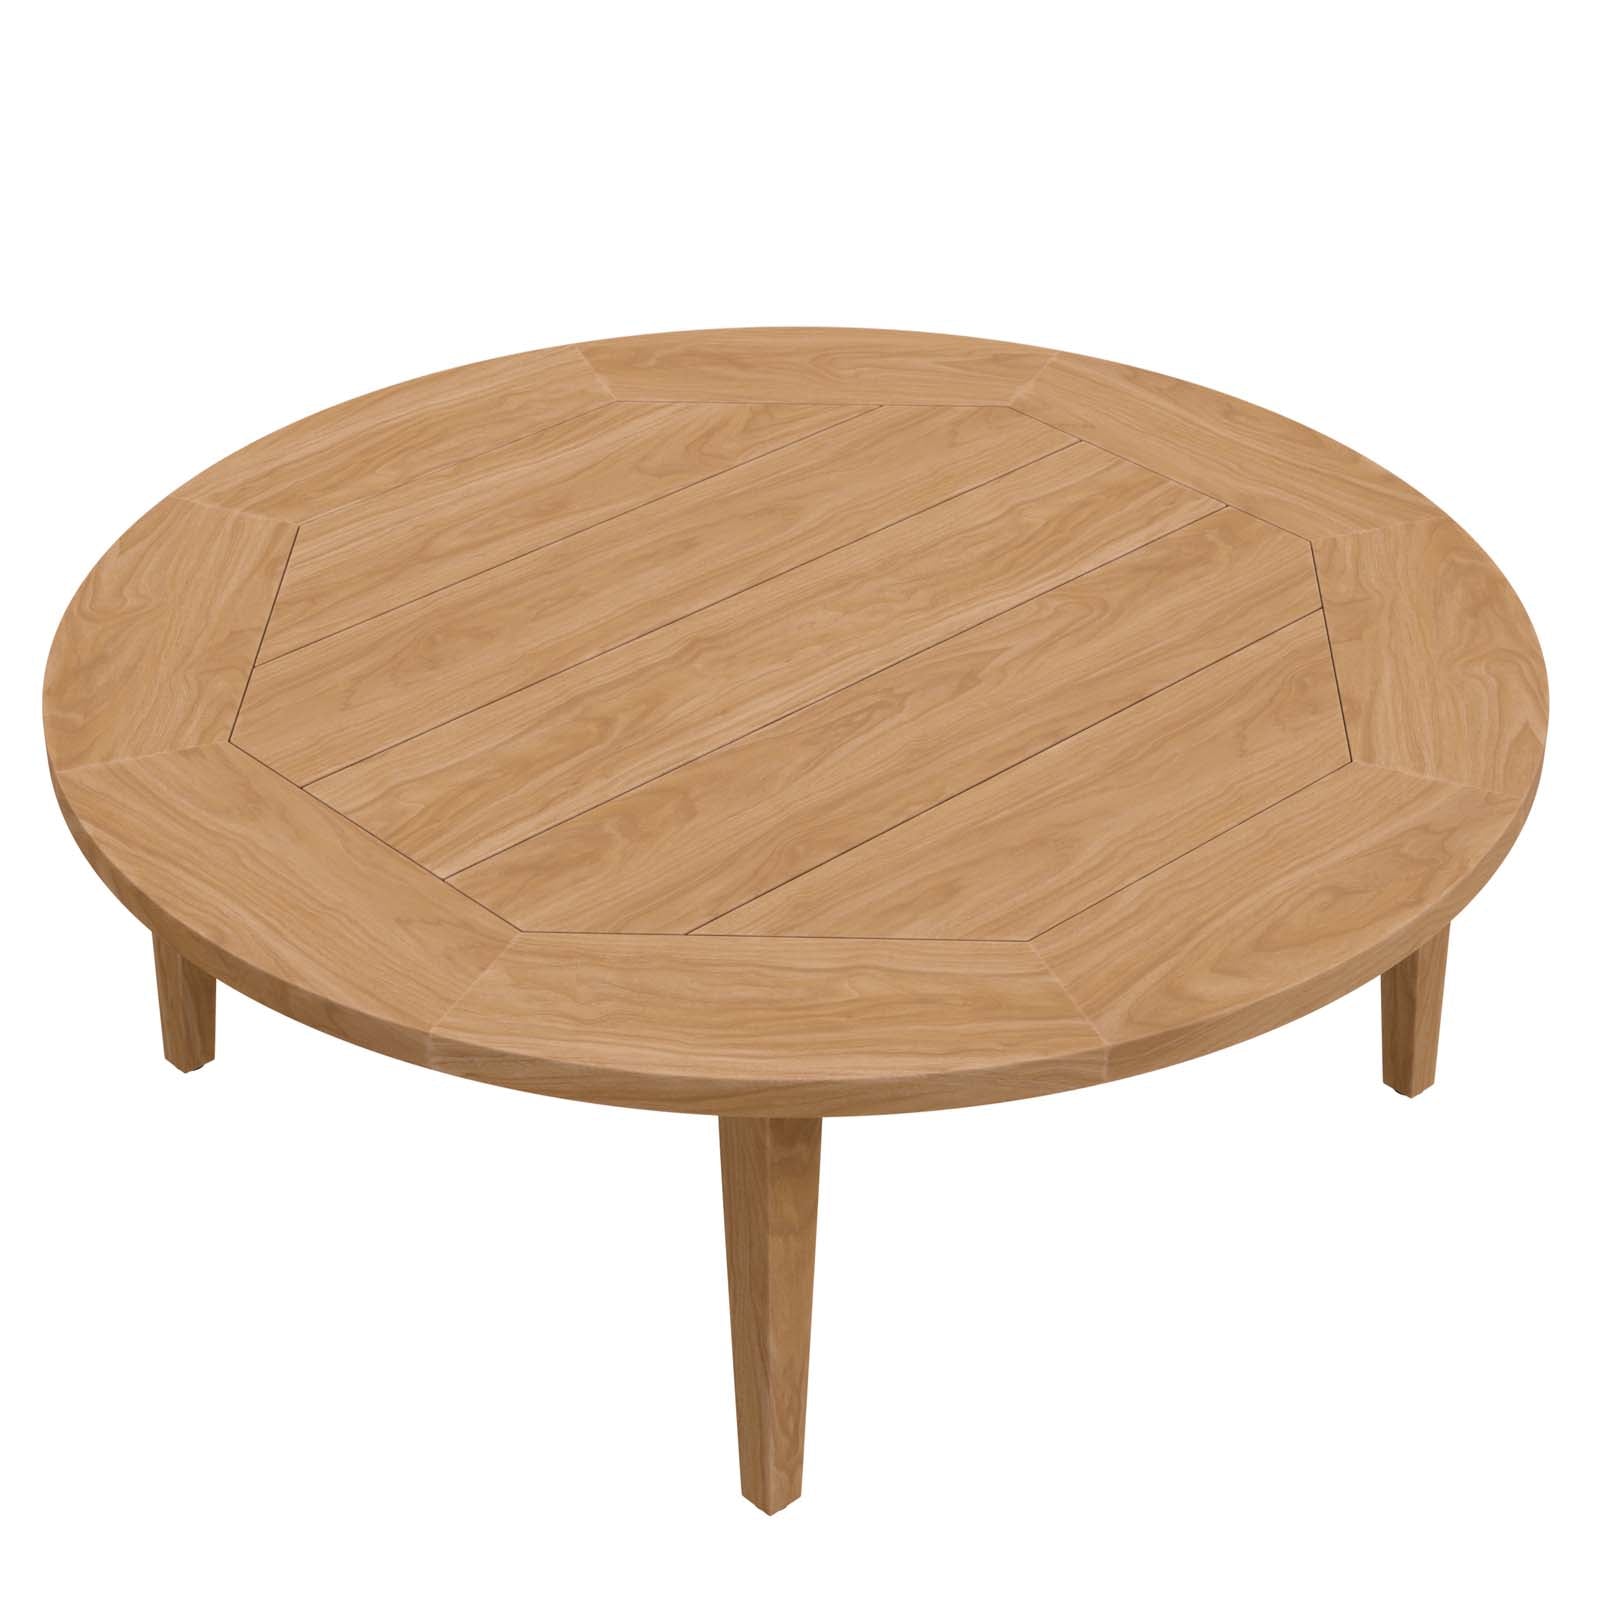 Brisbane Teak Wood Outdoor Patio Coffee Table-Outdoor Coffee Table-Modway-Wall2Wall Furnishings